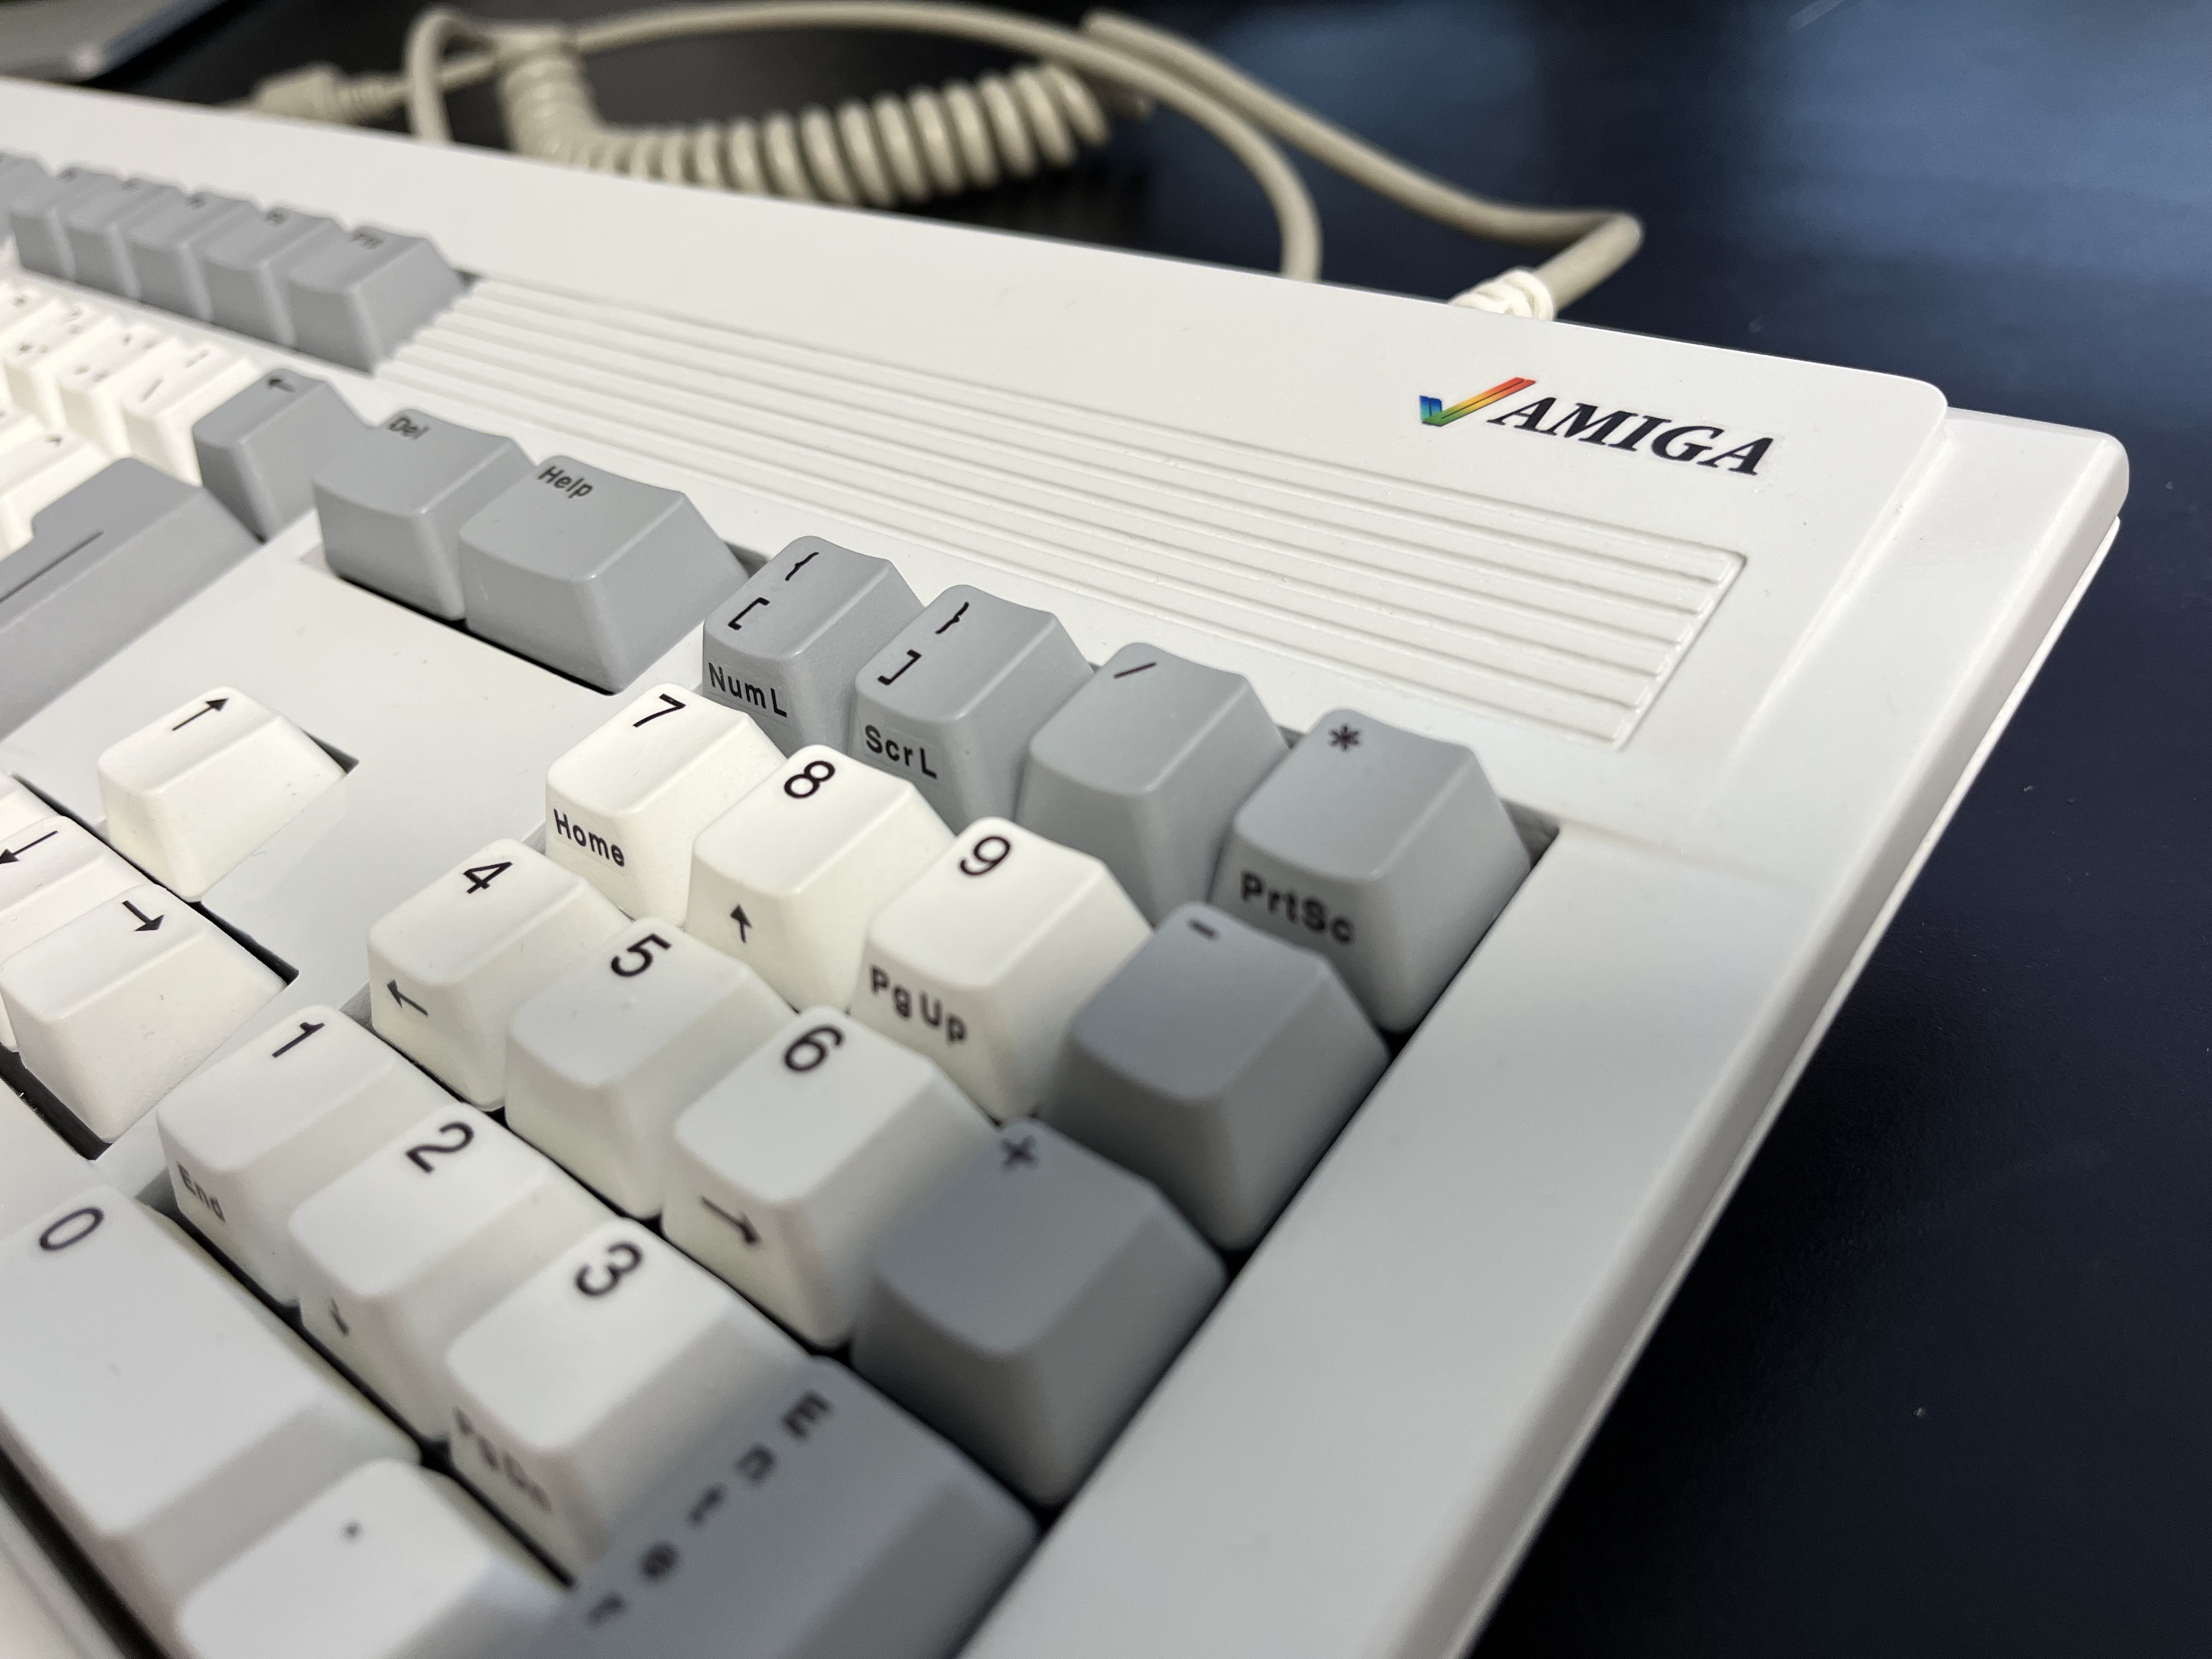 Amiga keyboard case